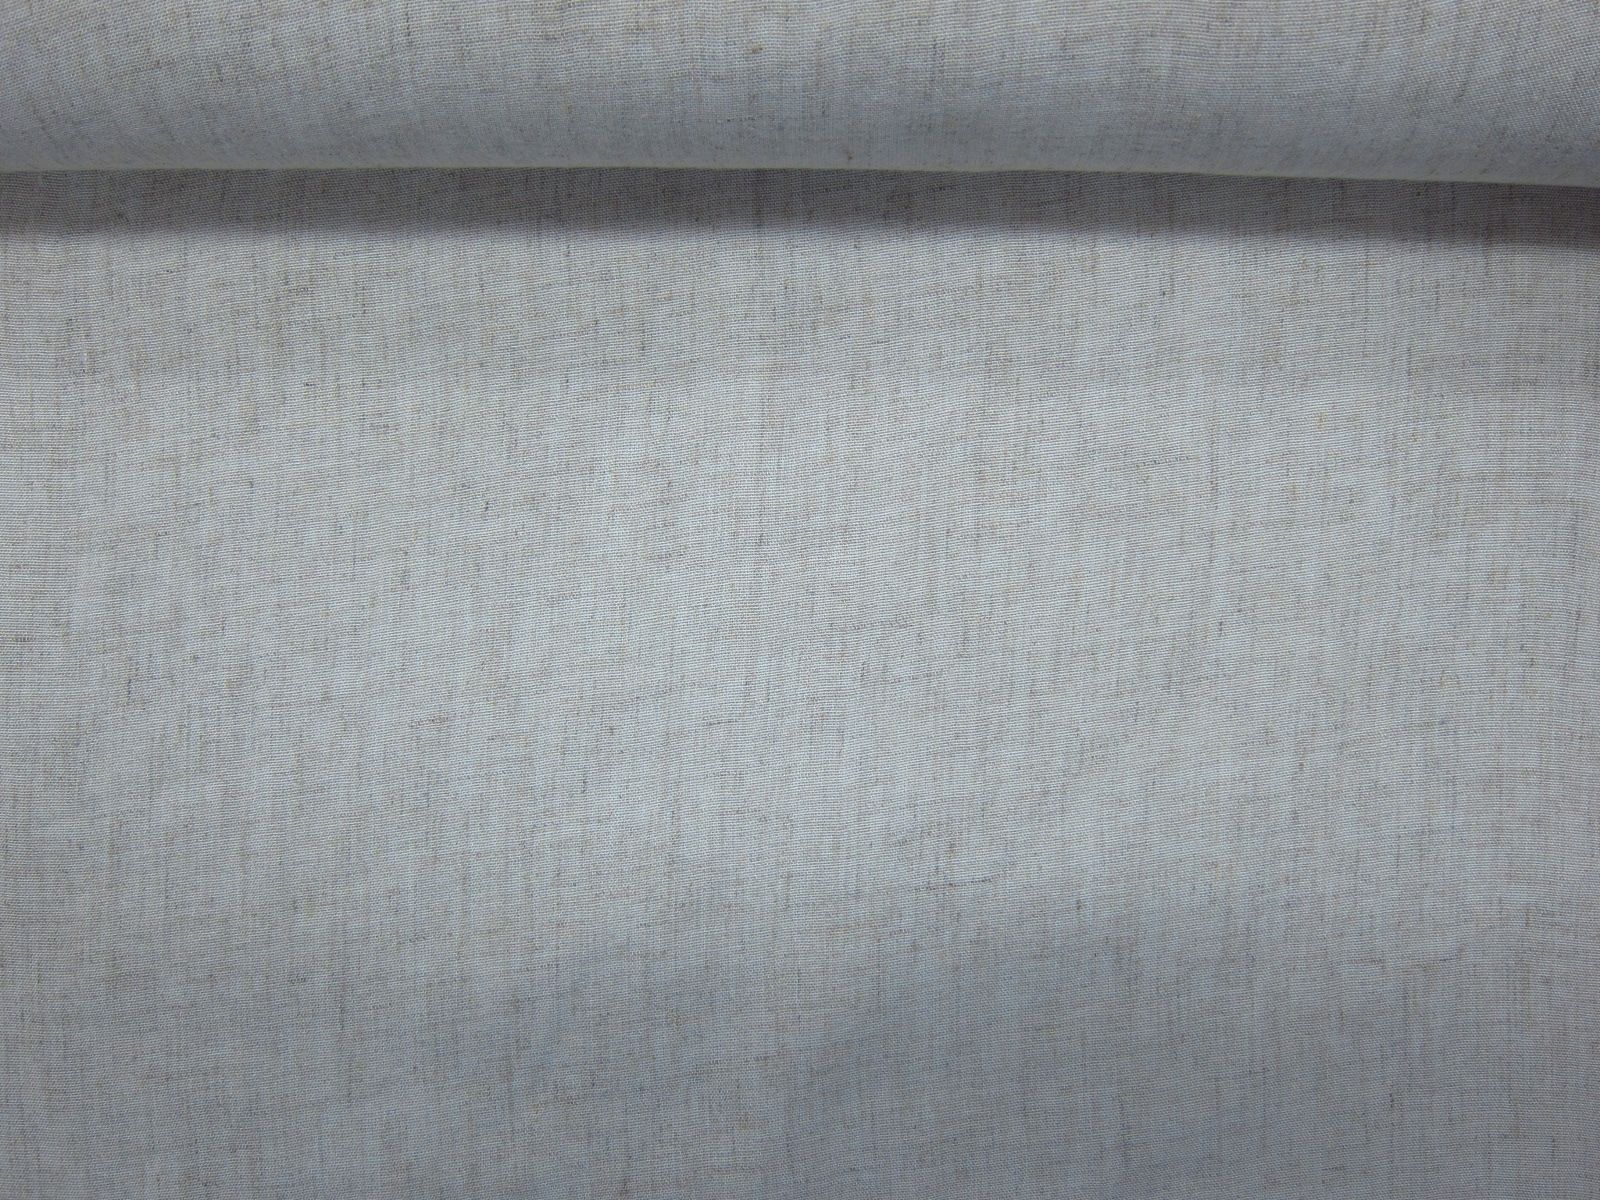 台灣製綿麻混紡布-素色綿麻-麻子米白-50%綿+50%特級亞麻、高溫熱縮處理、台灣製造